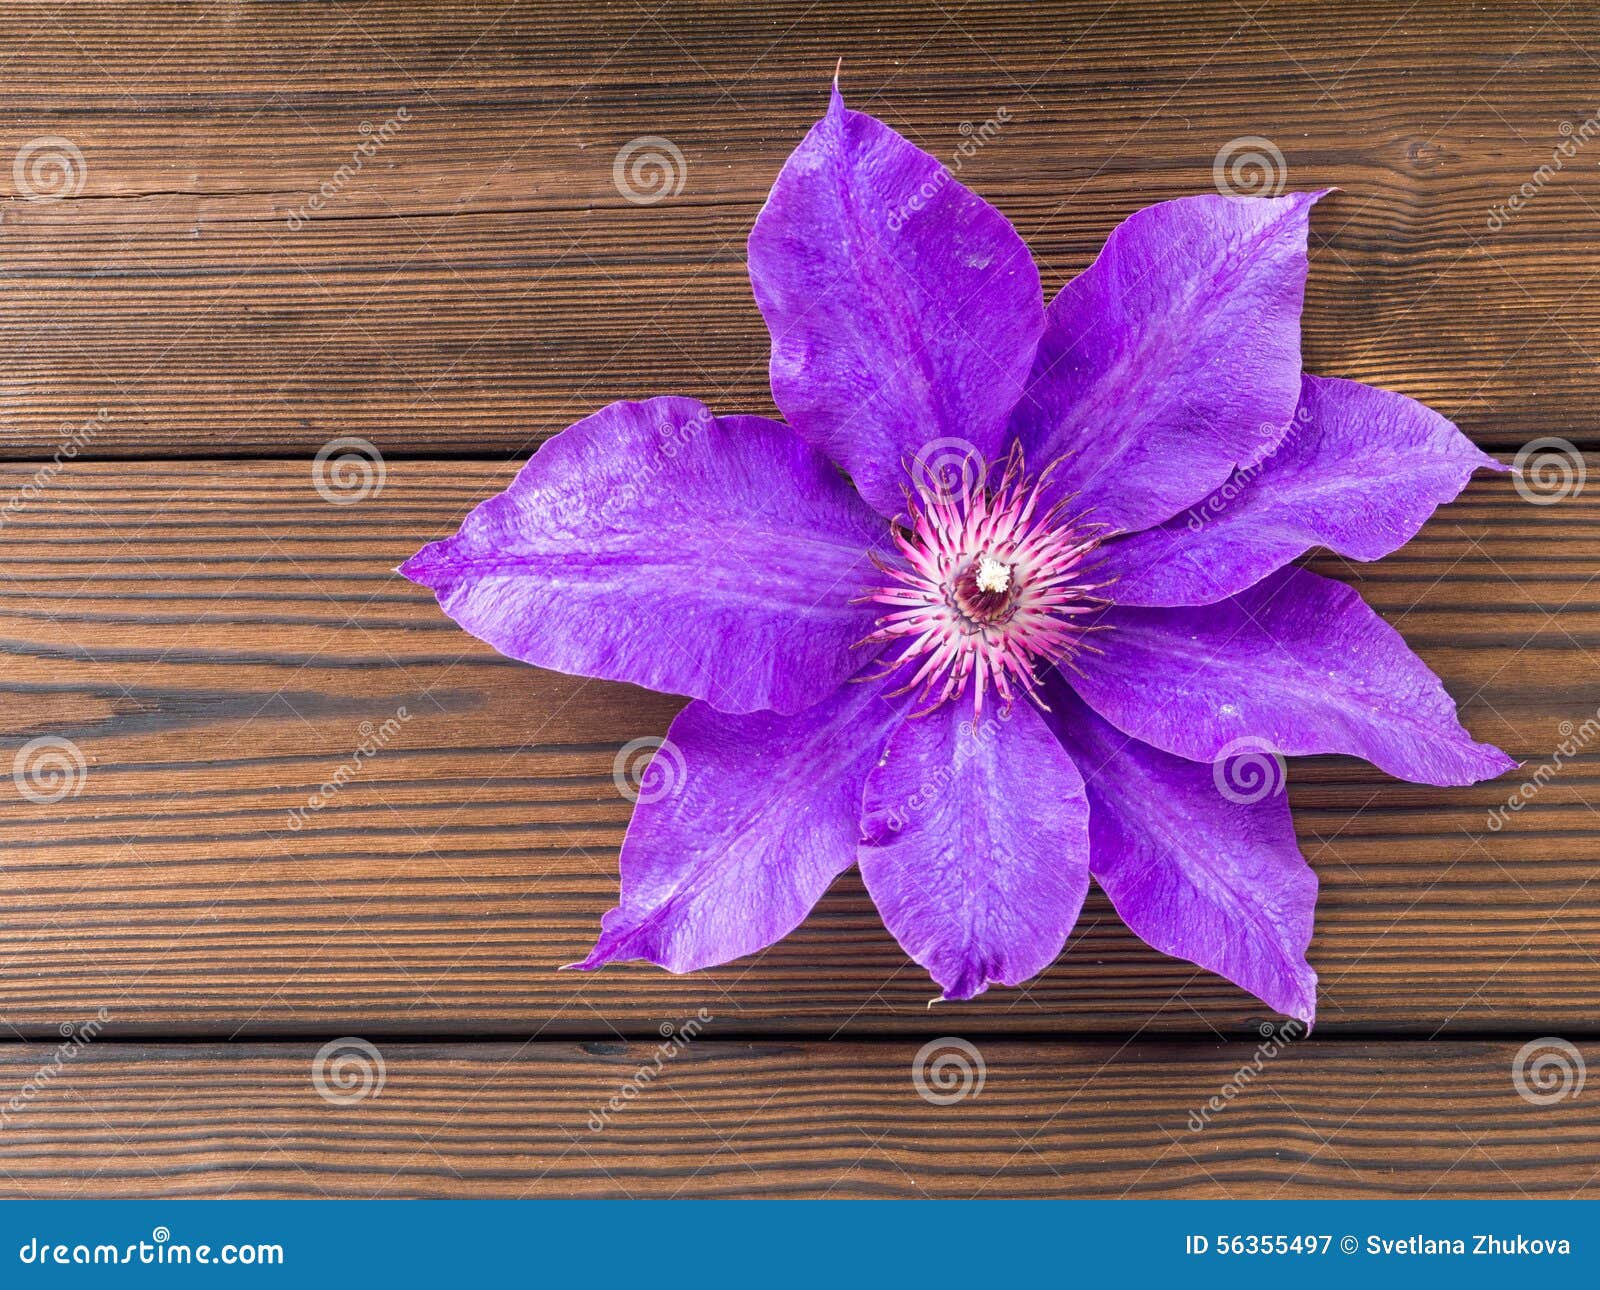 Fleur Violette De Clématite Sur Les Planches En Bois Image stock - Image du  étoile, panneau: 56355497